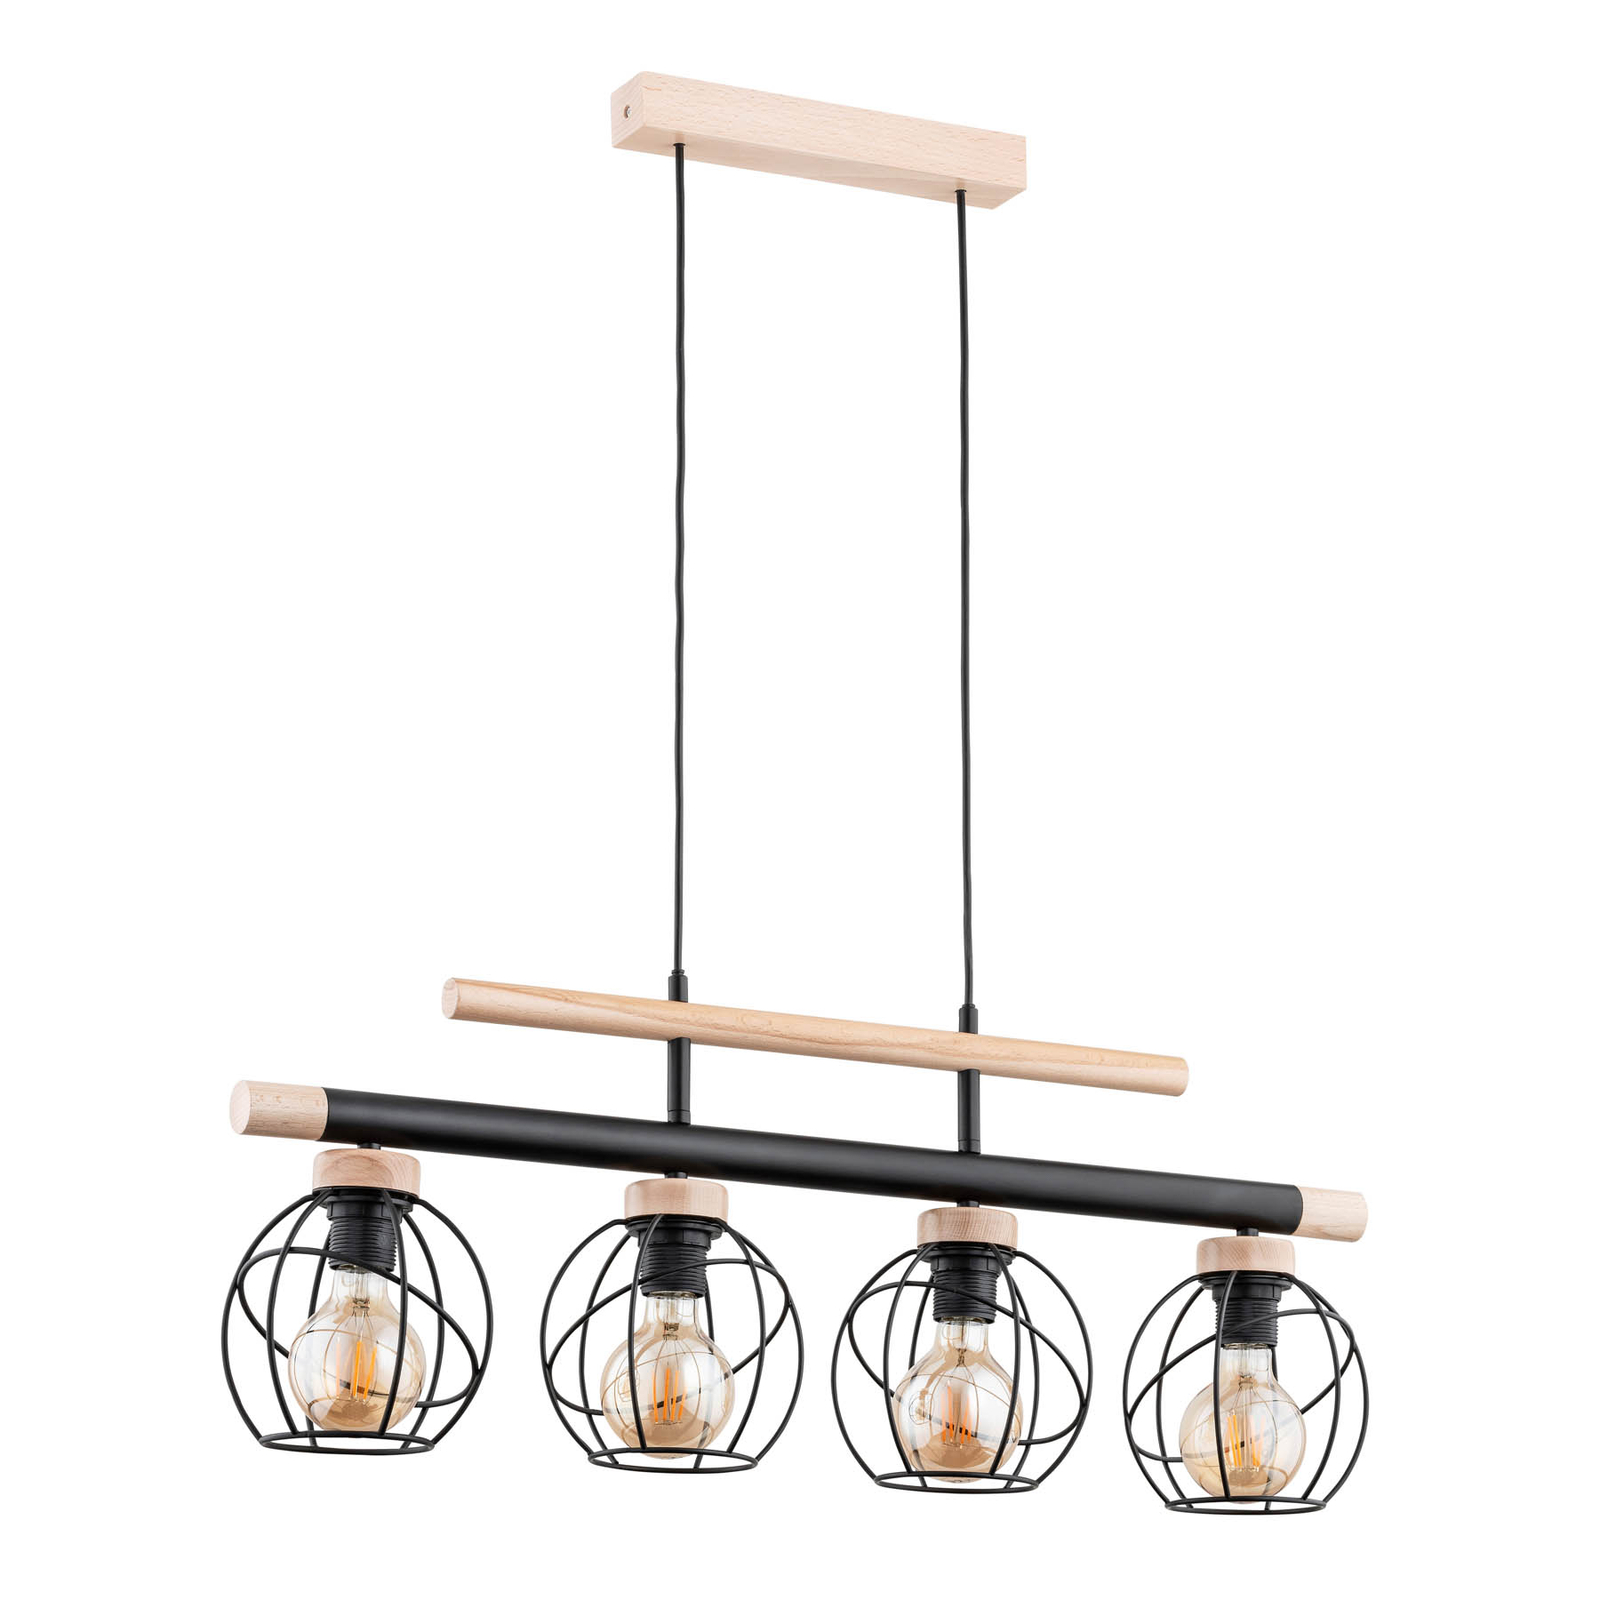 Candeeiro suspenso Basket moderno em madeira, quatro luzes